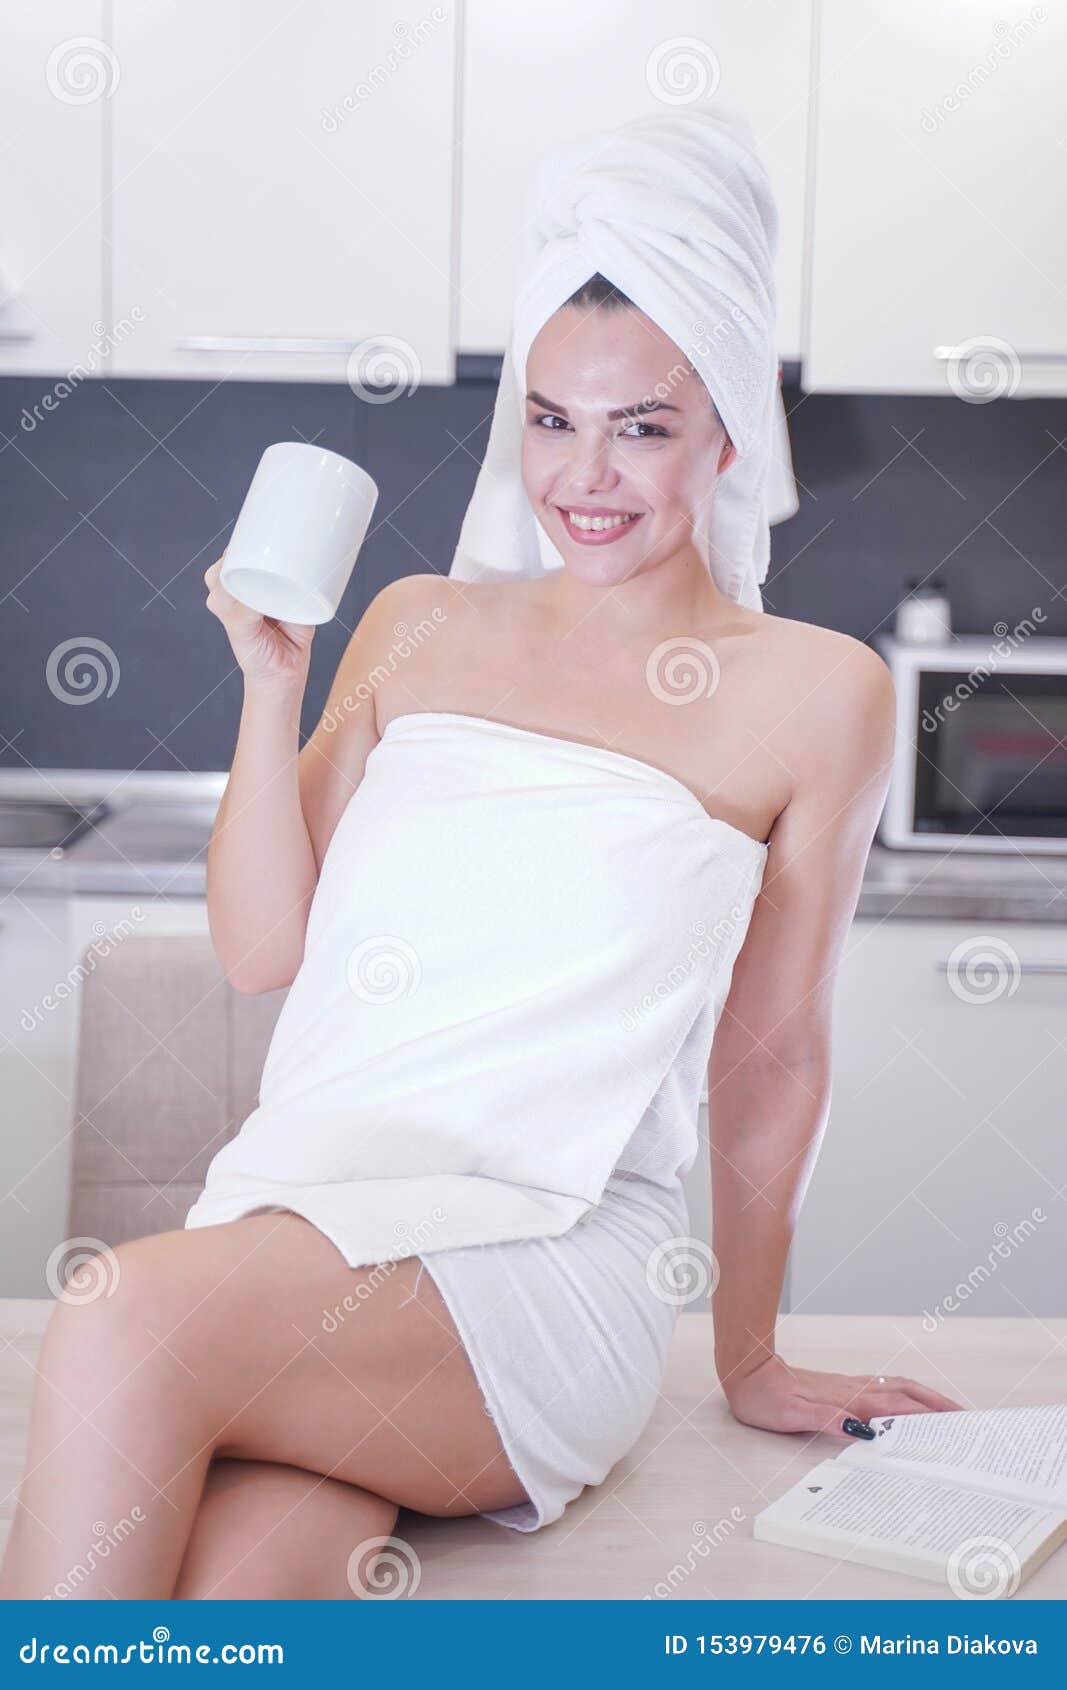 Девушка в полотенце фото. Девушка в полотенце на кухне. Молодые девушки в полотенце. Девушка закутанная в полотенце. Девушка в коротком полотенце.